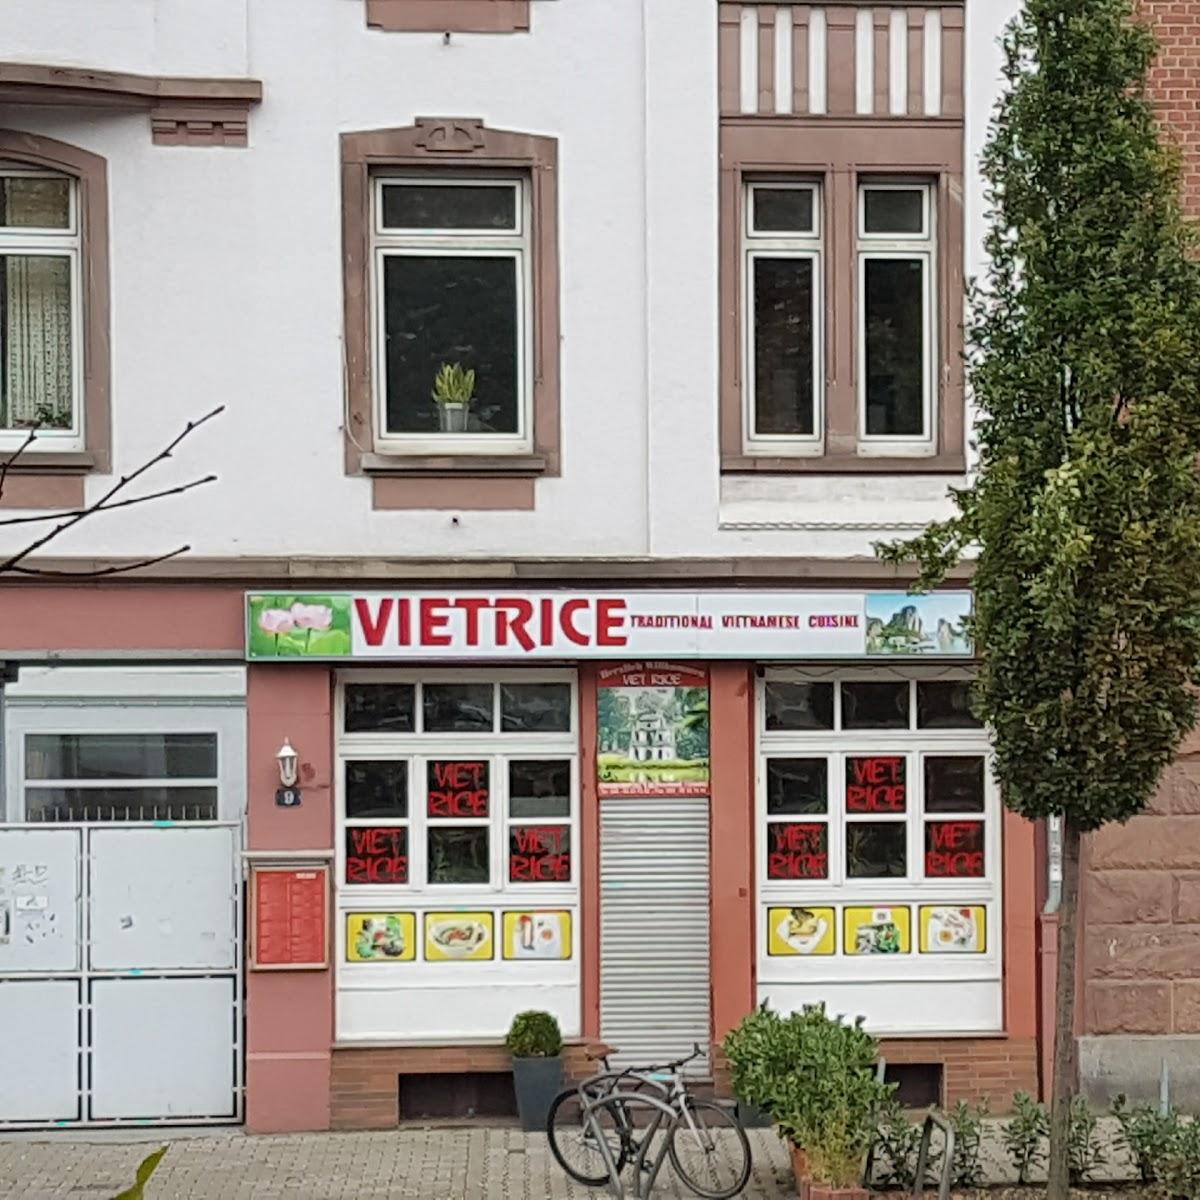 Restaurant "Viet rice" in Frankfurt am Main